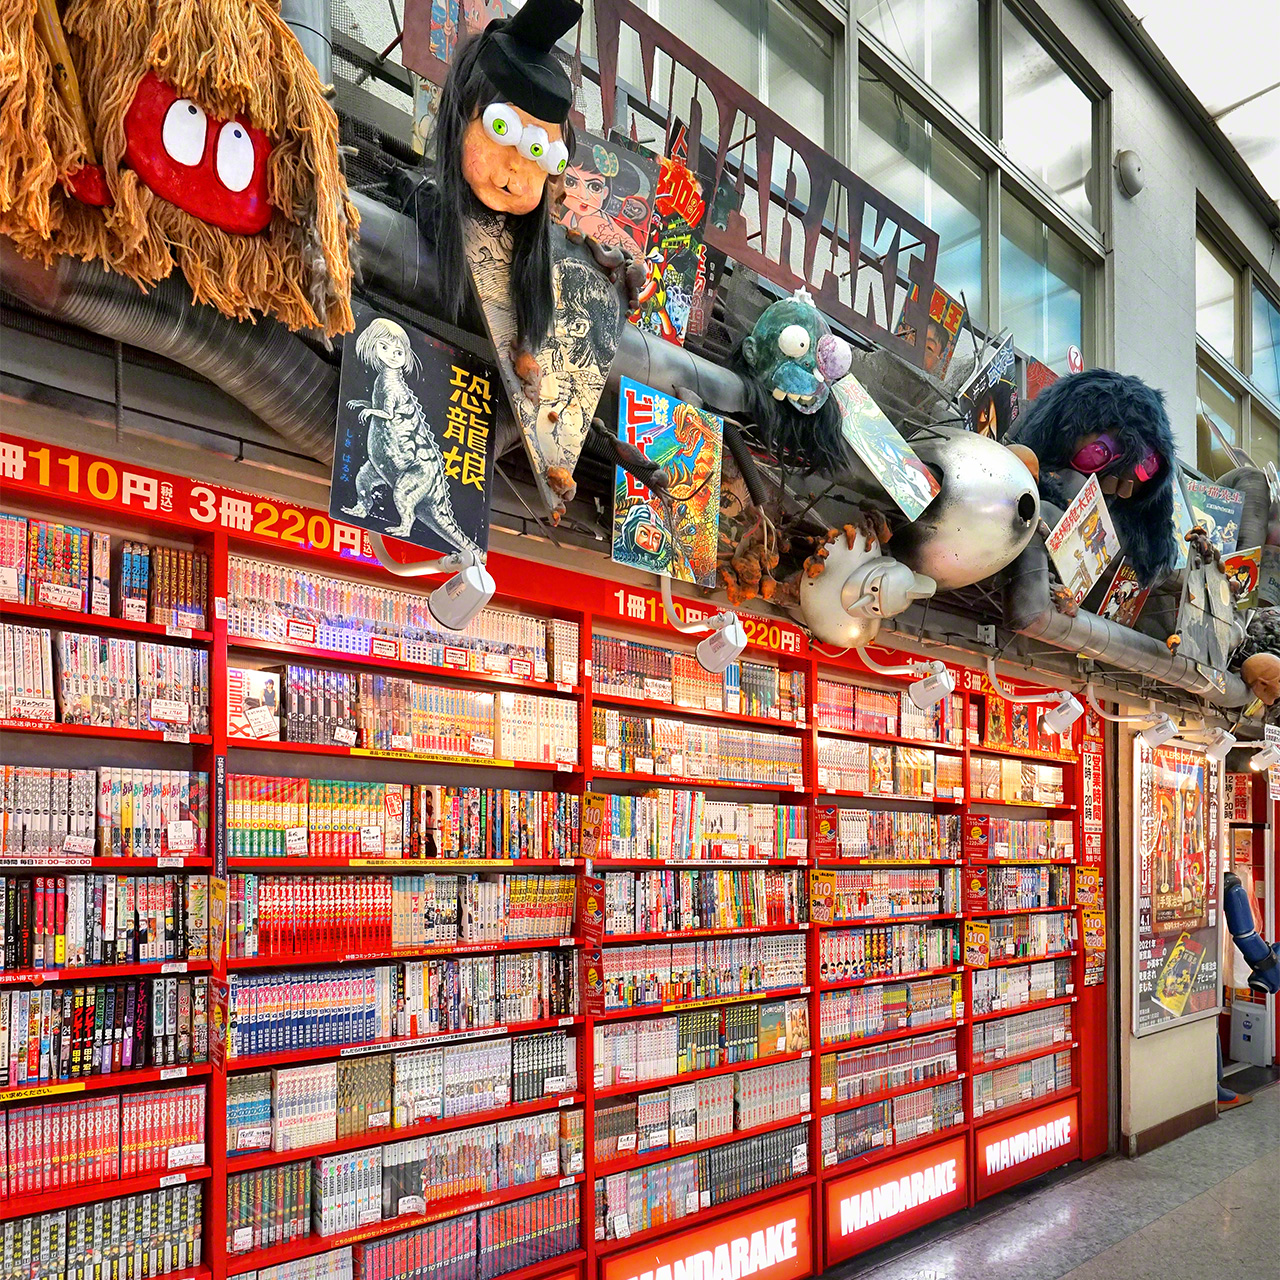 少年漫画、青年漫画の圧倒的な在庫量を誇る、中野ブロードウェイの3階にある「まんだらけ 本店」